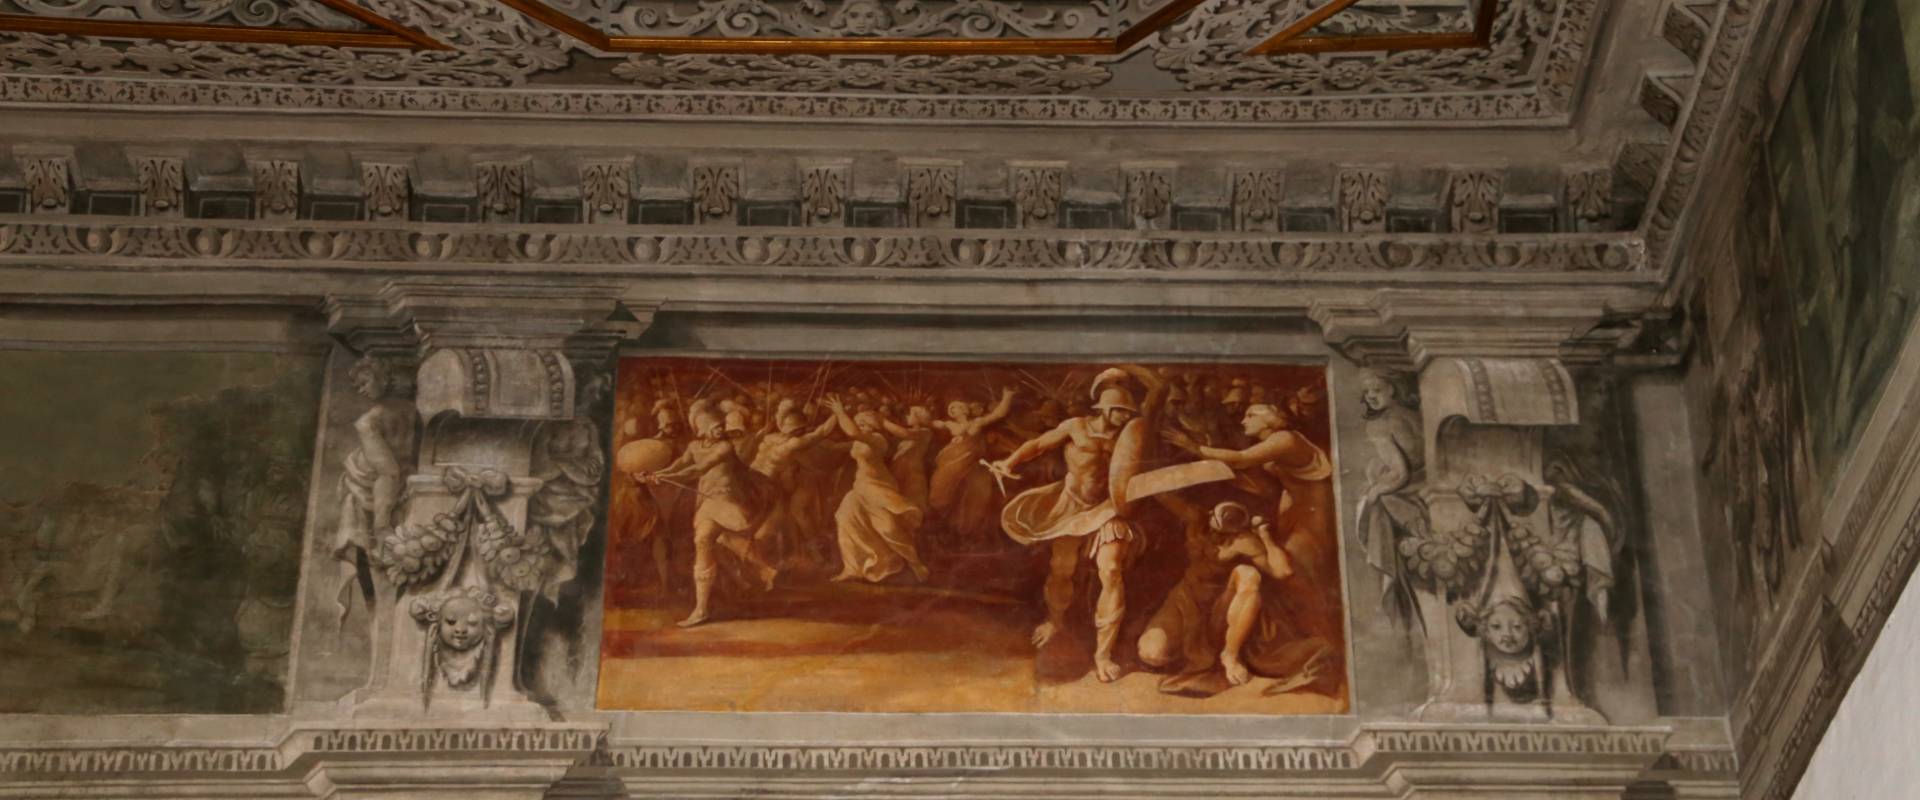 Gualtieri, palazzo bentivoglio, sala di giove, fregio con storie di roma da tito livio, 1600-05 circa, 10 foto di Sailko